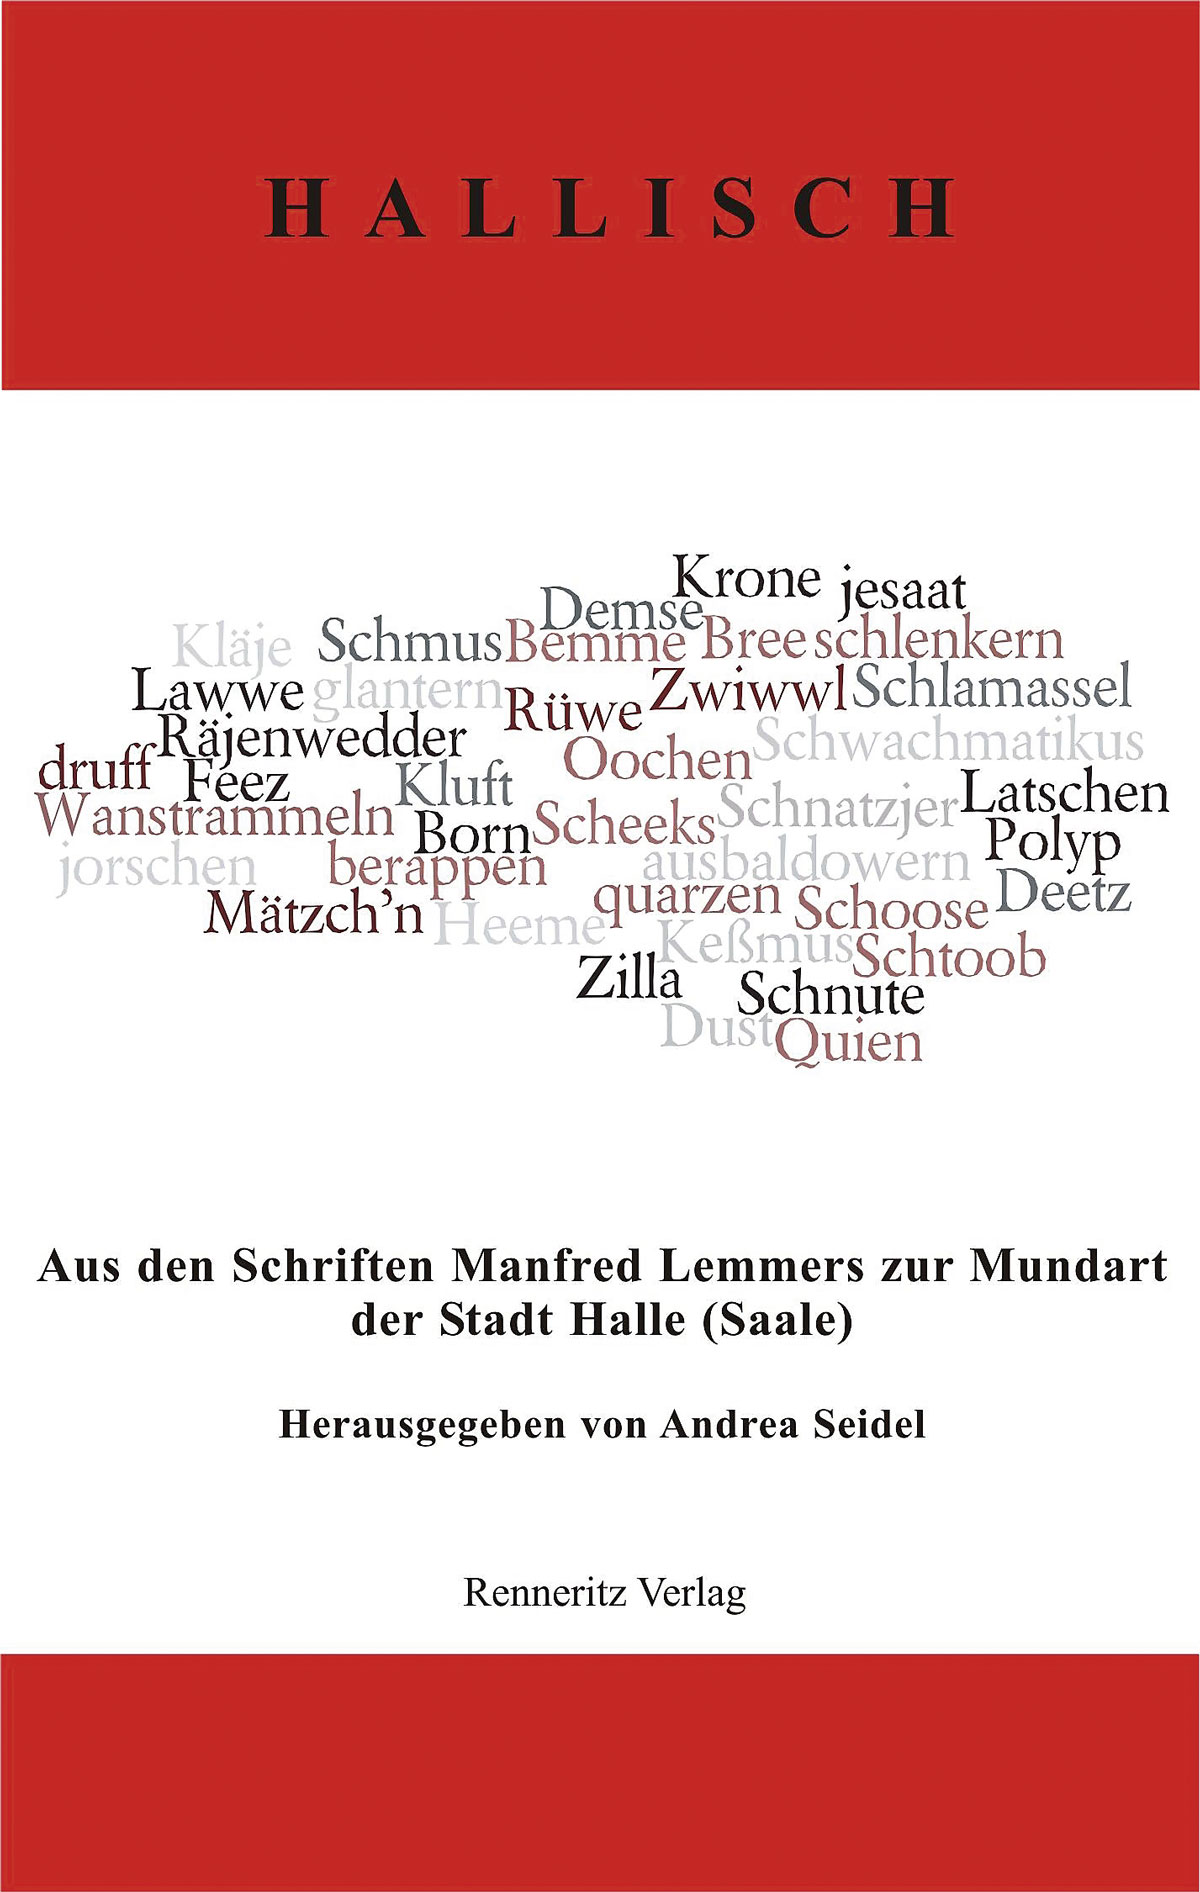 Manfred Lemmer: Hallisch. Aus den Schriften Manfred Lemmers zur Mundart der Stadt Halle (Saale). Hg. von Andrea Seidel. Renneritz Verlag Sandersdorf-Brehna 2018.